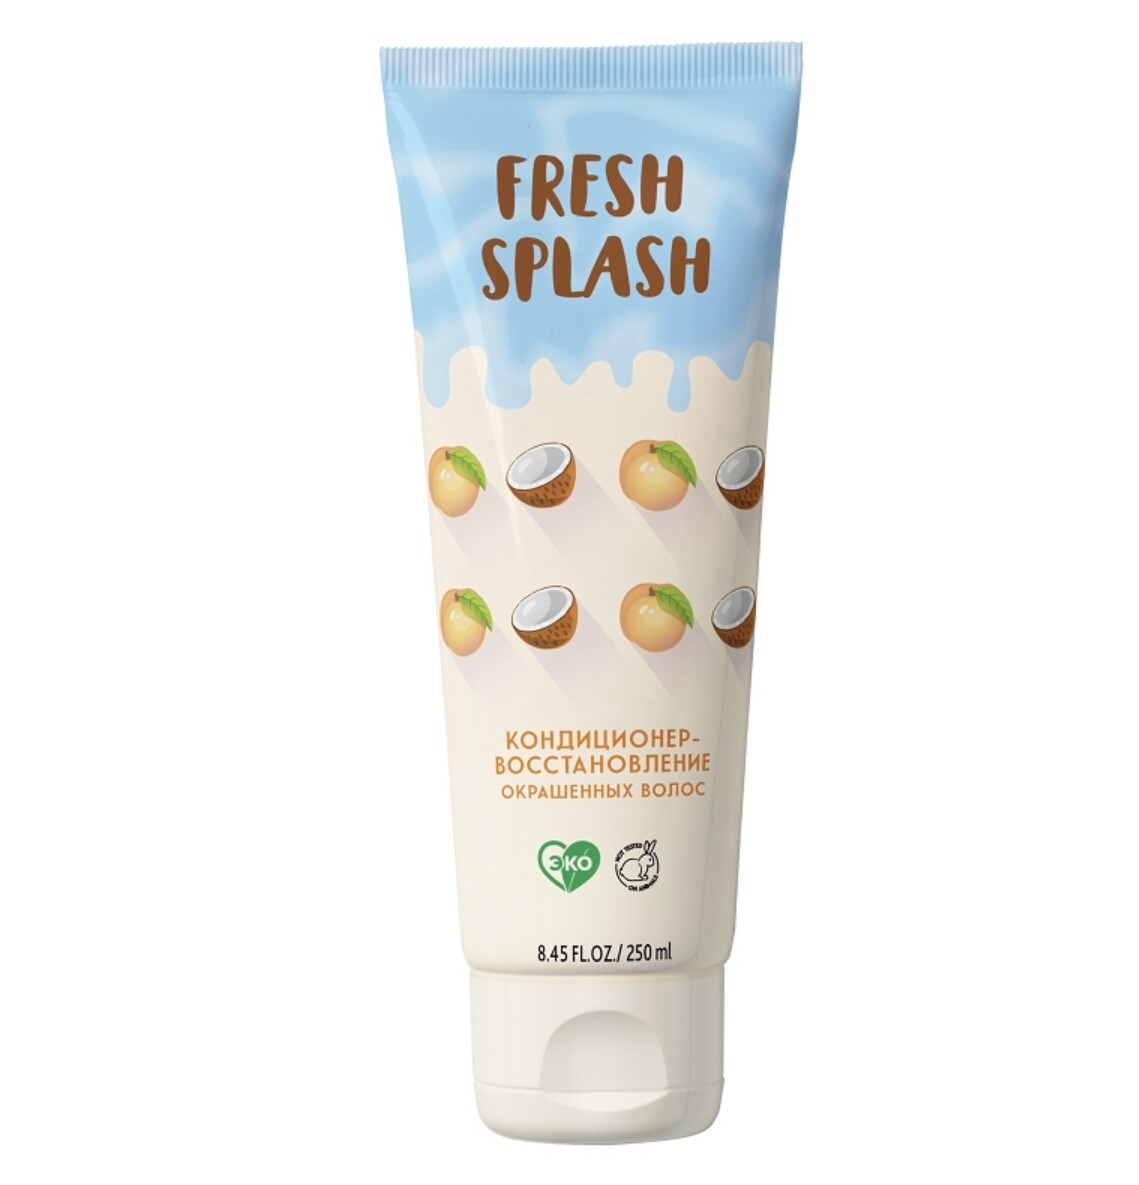 Fresh splash кондиционер-восстановление окрашенных волос , 250 мл splash page